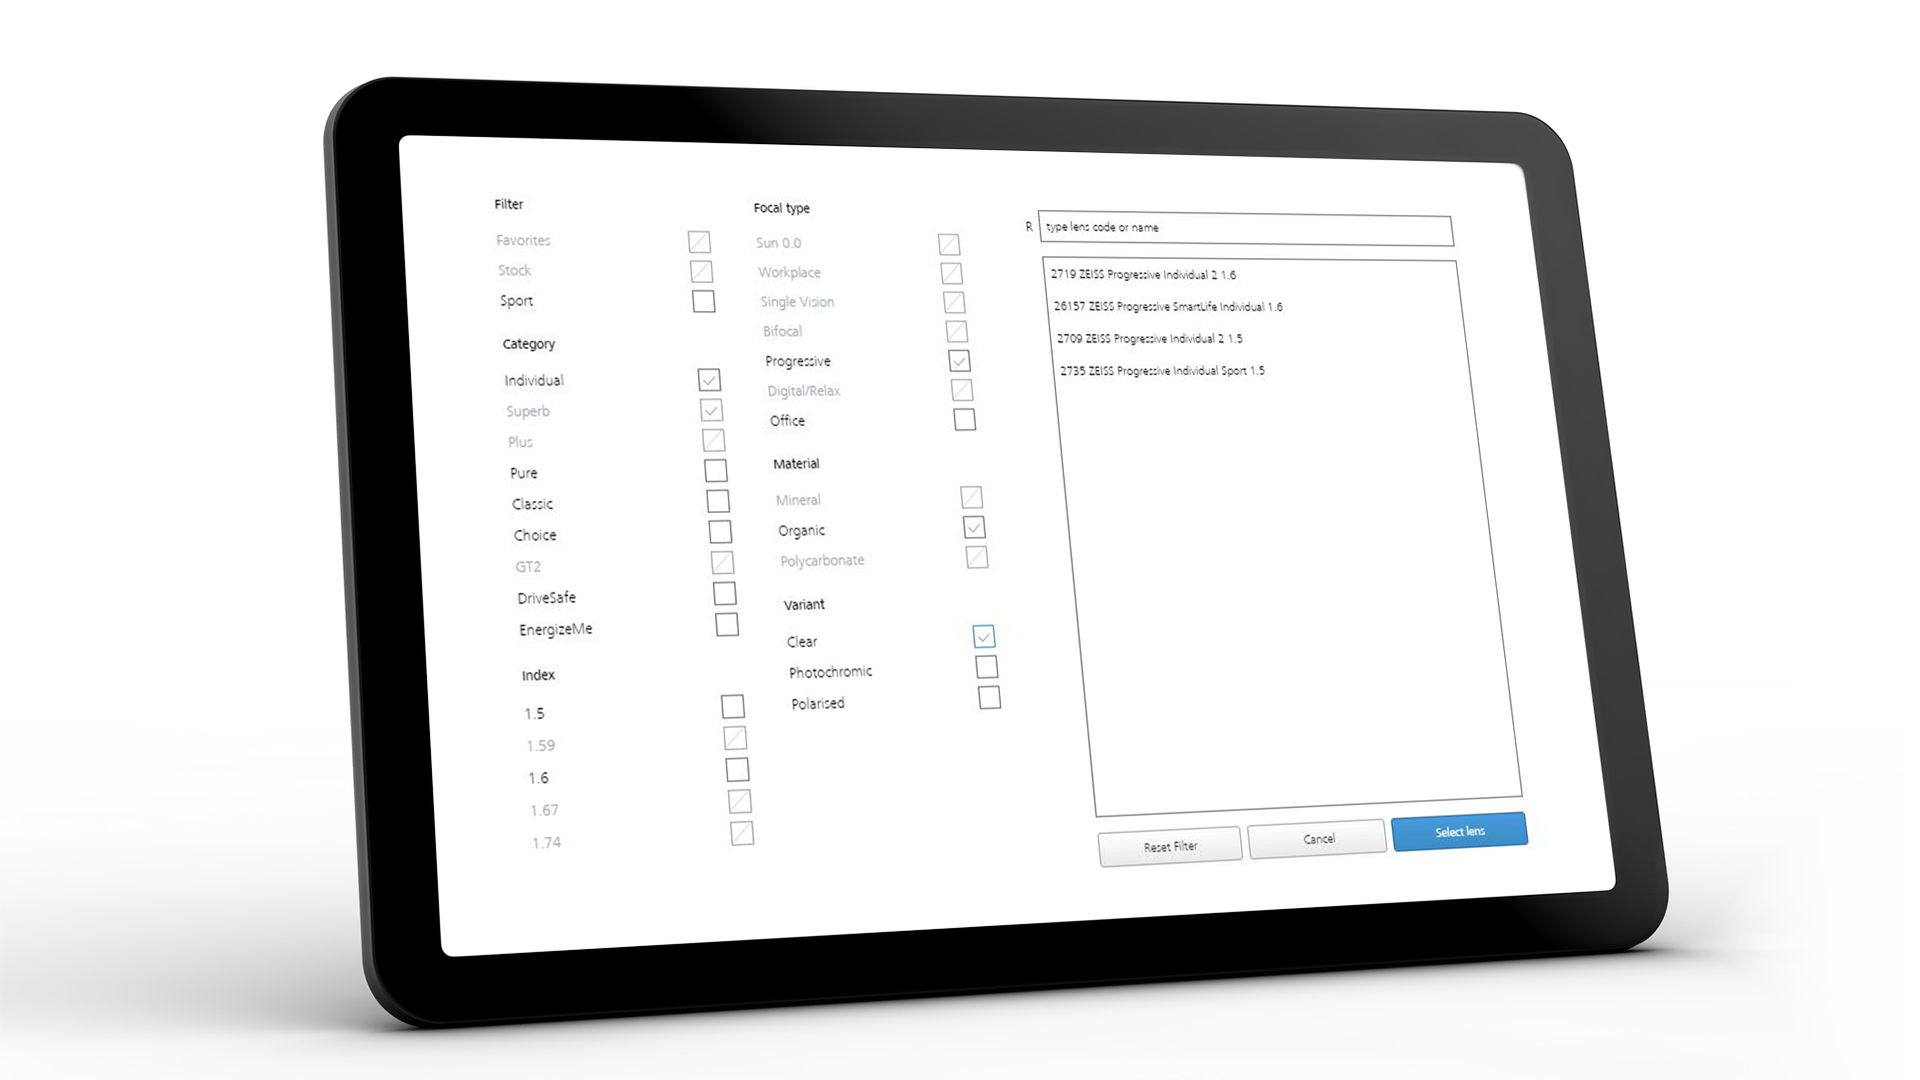 Obrazovka tabletu zobrazujúca rozhranie ZEISS VISUSTORE pre niekoľko pomôcok pri zadávaní  